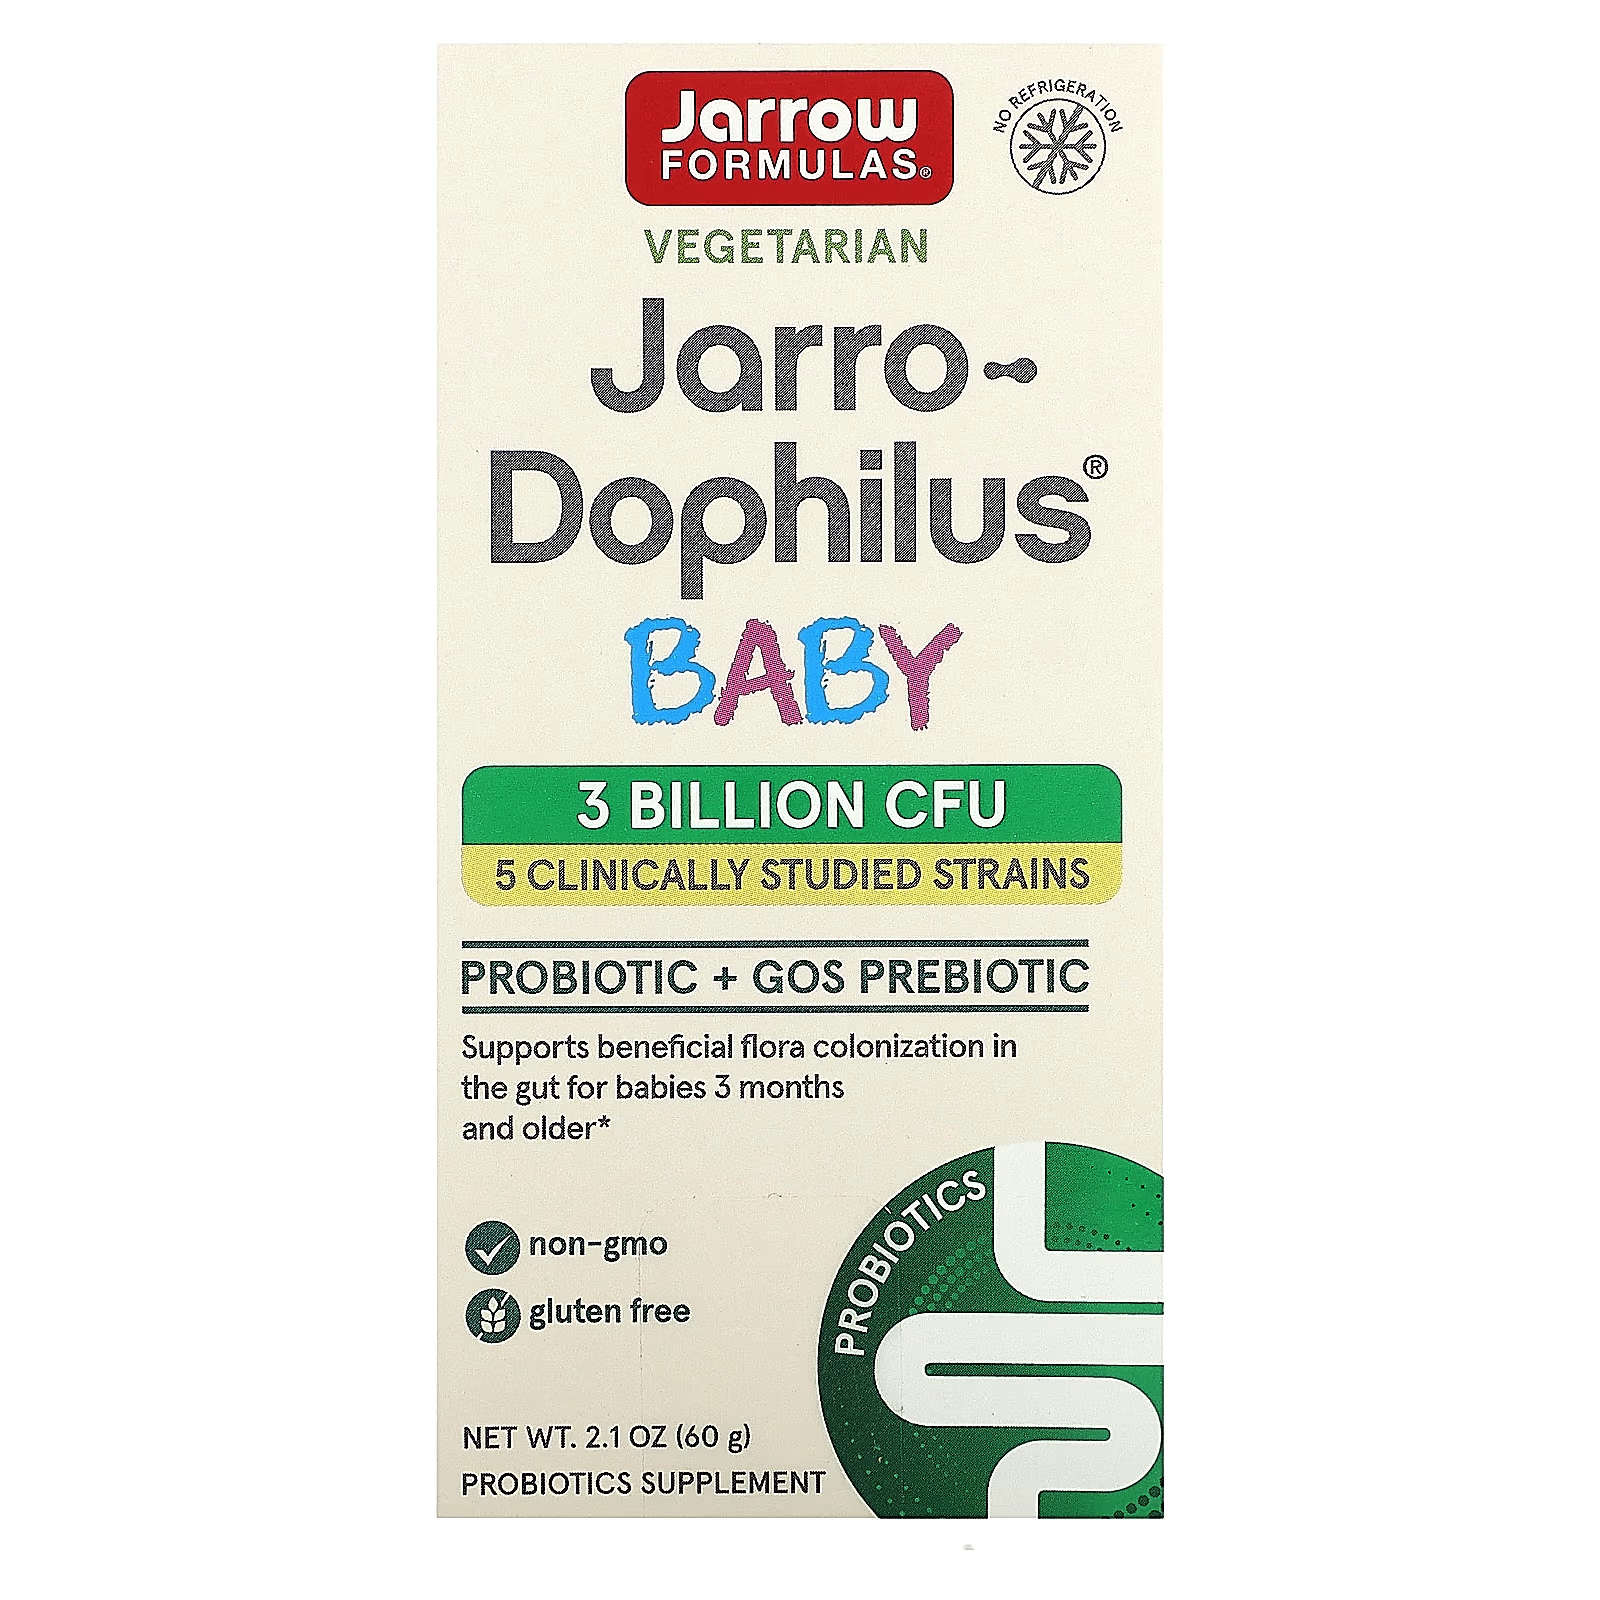 пробиотики для детей jarrow formulas jarro dophilus baby 3 billion cfu 60 г Jarrow Formulas Вегетарианский Jarro-Dophilus Baby 3 месяца + 3 миллиарда КОЕ, 2,1 унции (60 г)